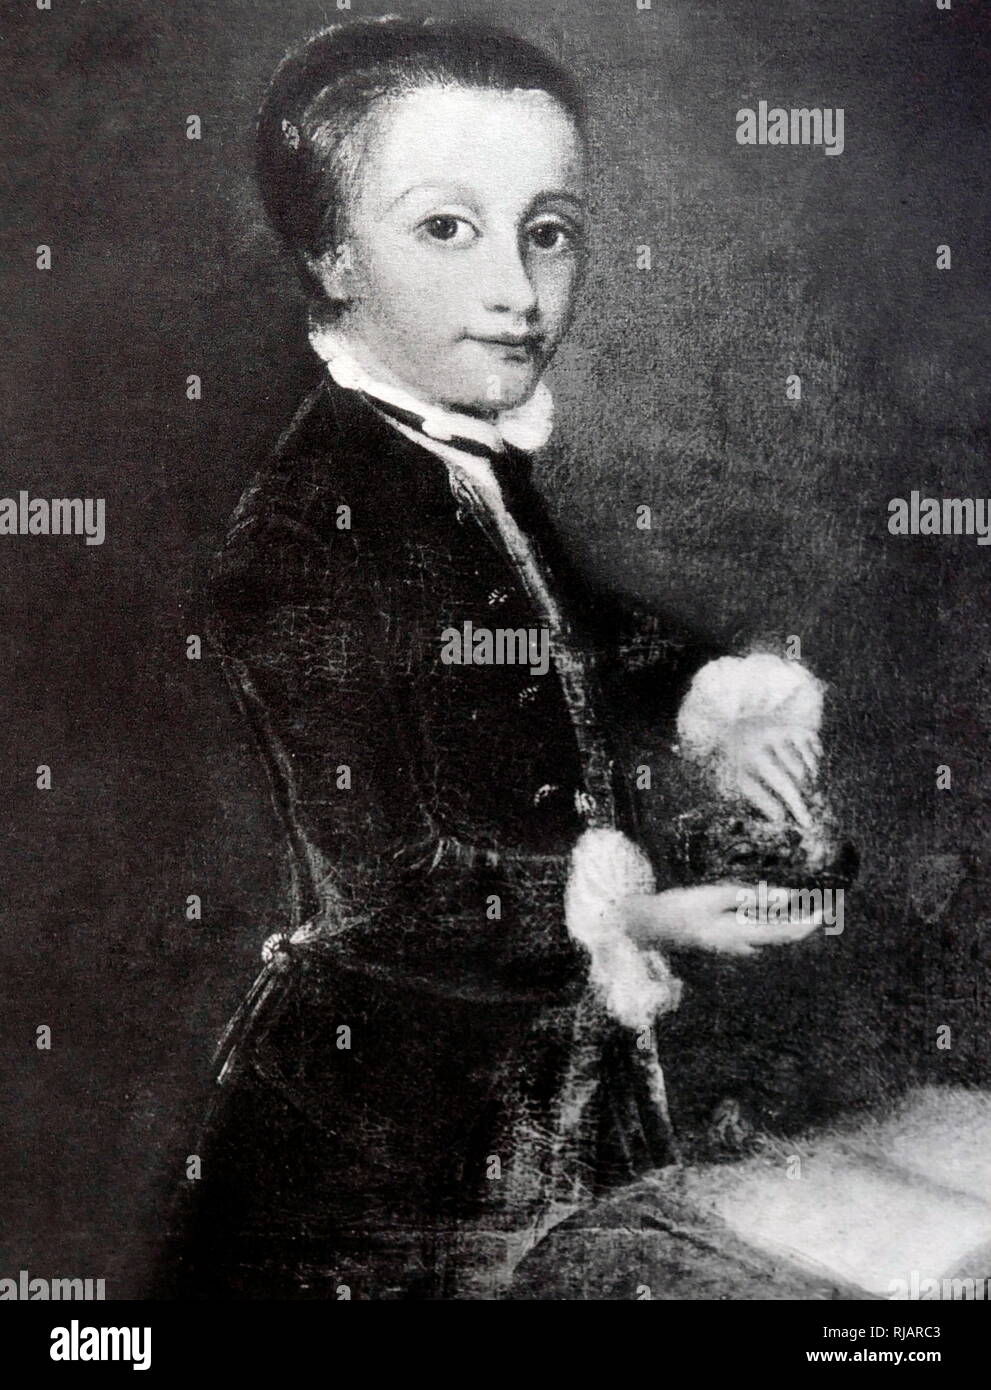 Portrait de Mozart âgé de 8 ans, par Johan Joseph Zoffany. Huile sur toile, 1764. Wolfgang Amadeus Mozart (1756 - 1791), était un compositeur prolifique et influent de l'époque classique. Banque D'Images